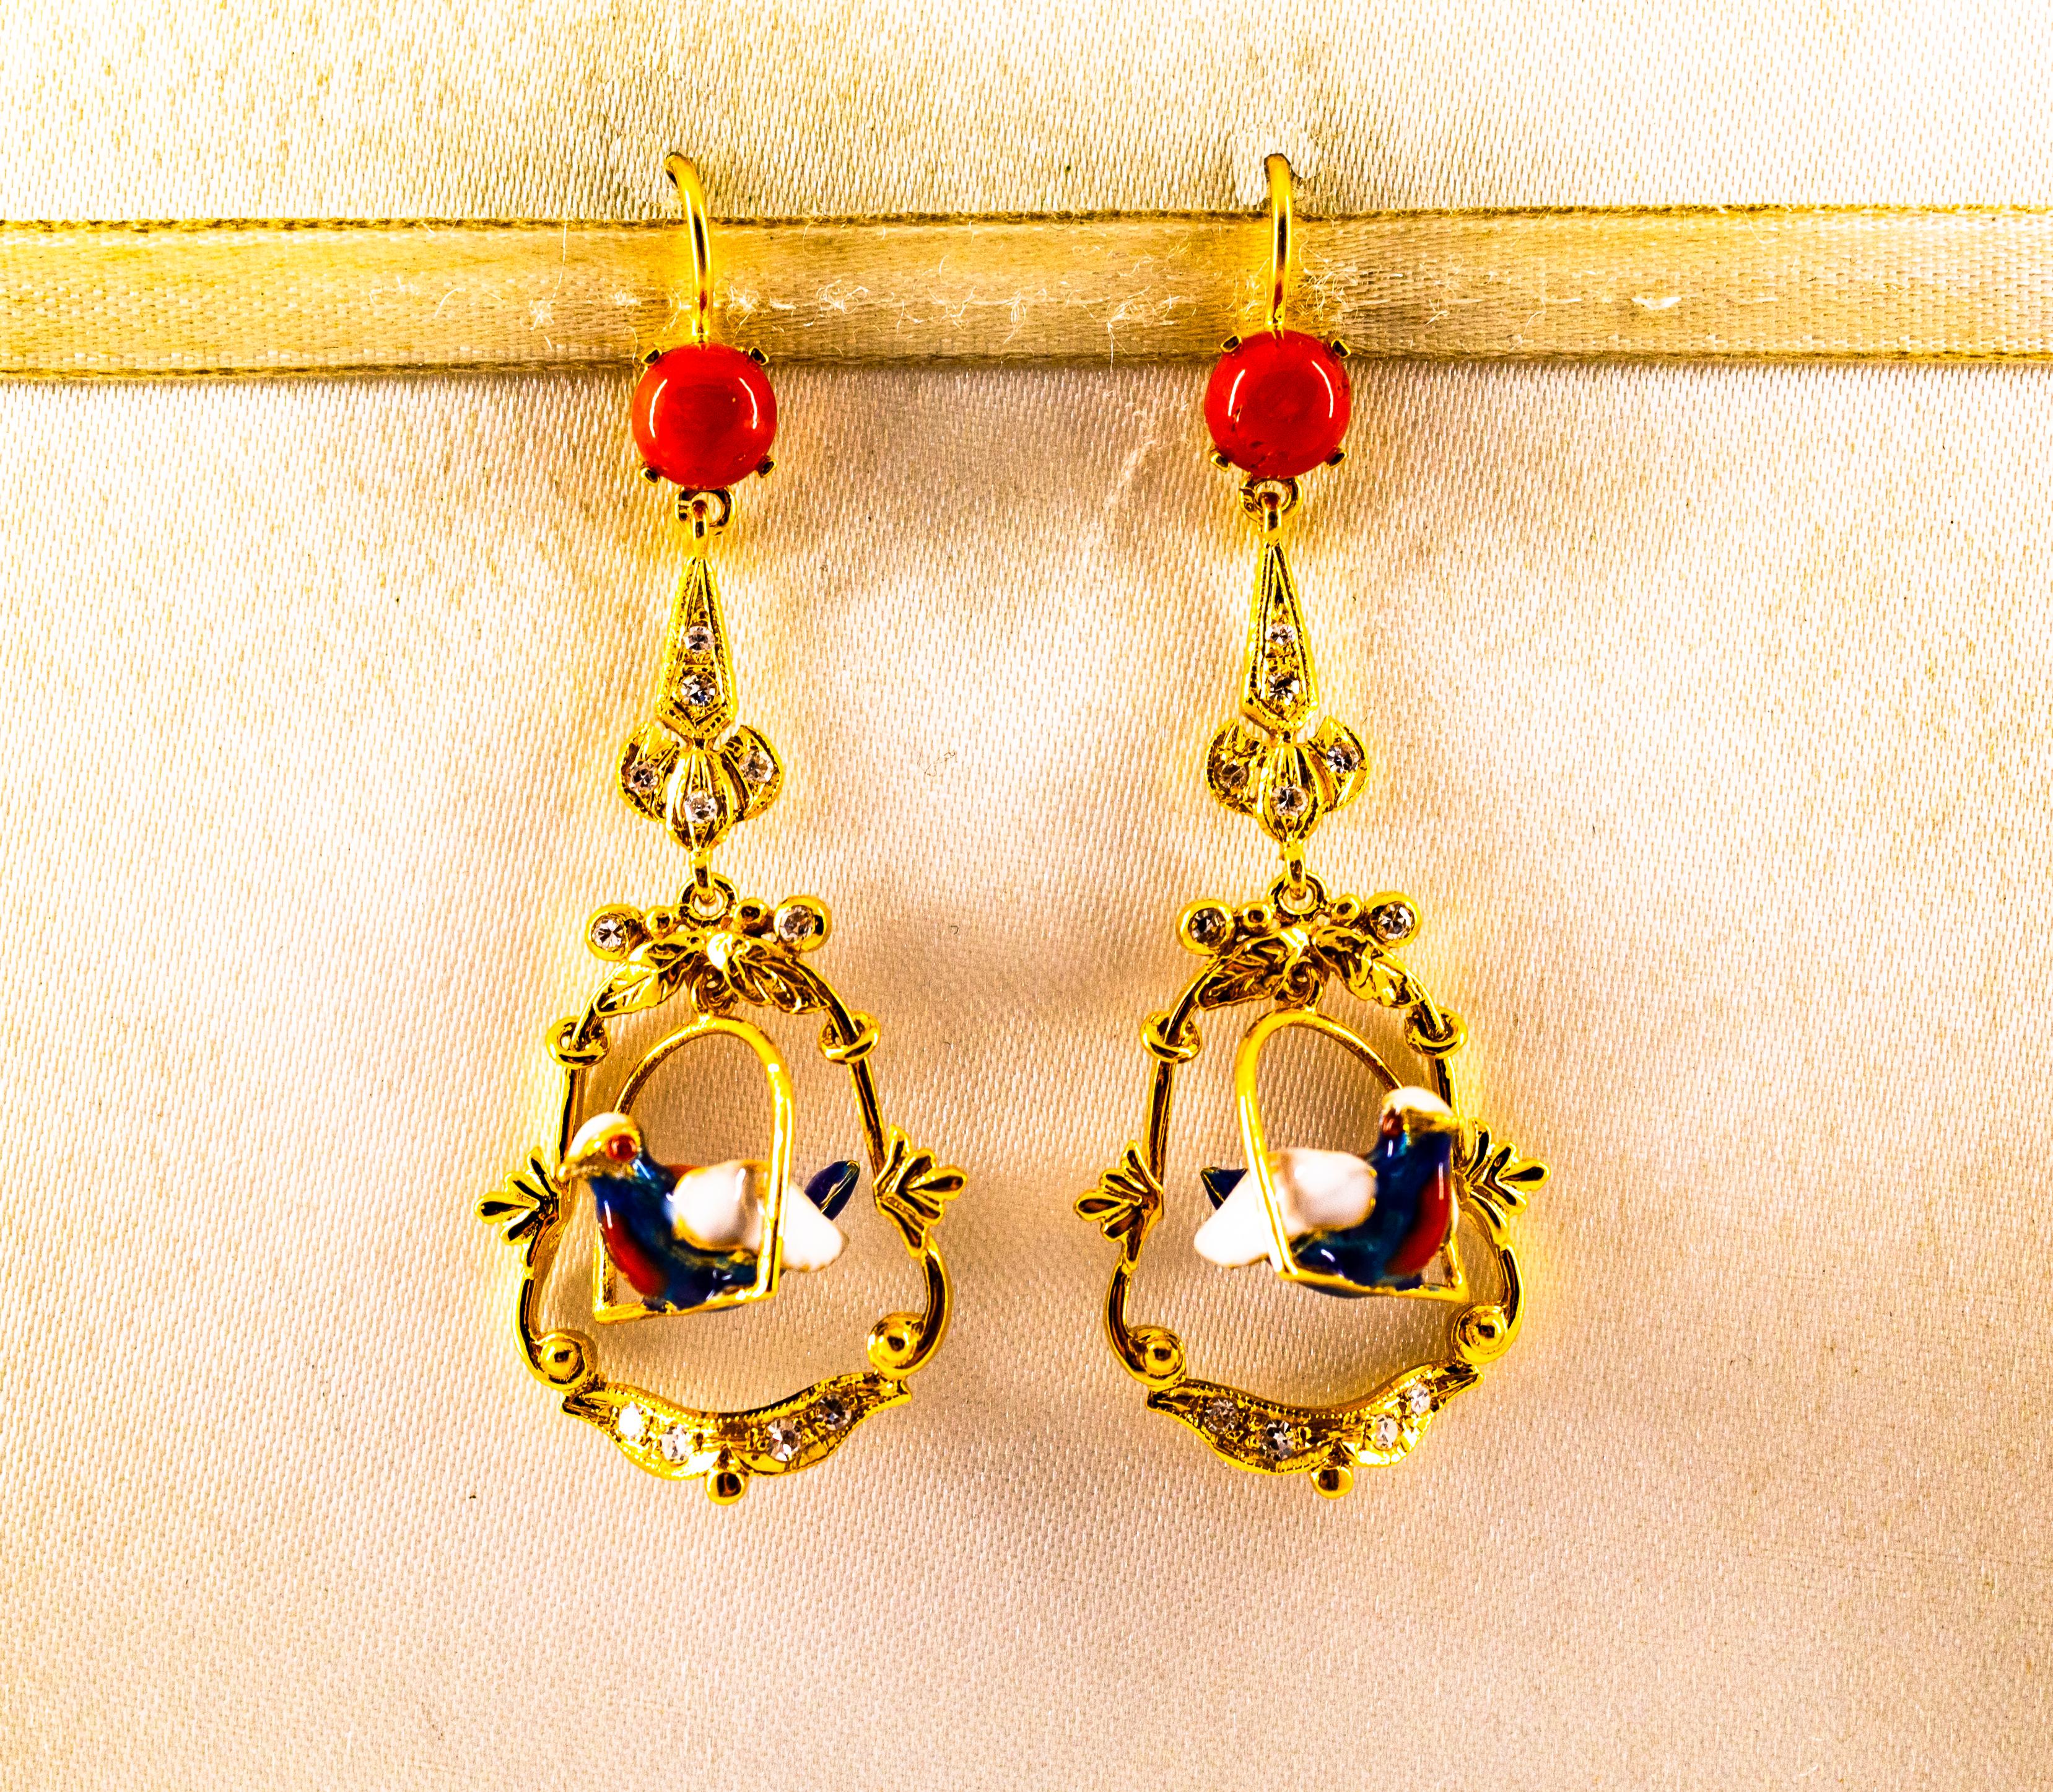 Diese Ohrstecker sind aus 14K Gelbgold gefertigt.
Diese Ohrringe bestehen aus 0,40 Karat weißen Diamanten.
Diese Ohrringe bestehen aus roten Korallen aus dem Mittelmeerraum (Sardinien, Italien).
Diese Ohrringe haben auch Emaille.
Alle unsere